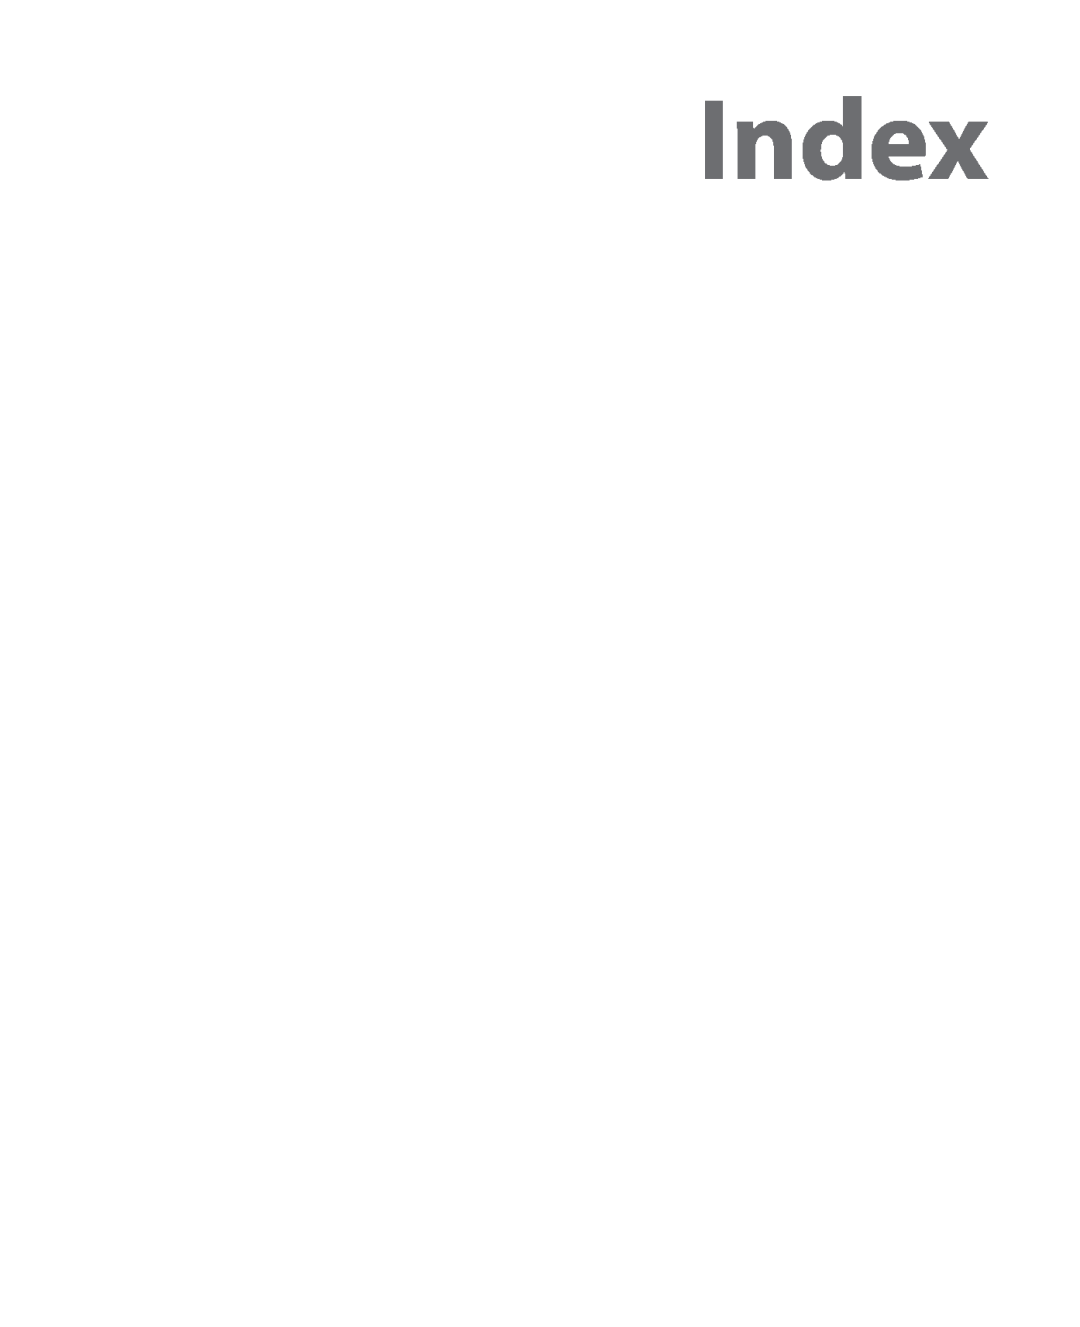 HTC HTC S621 user manual Index 